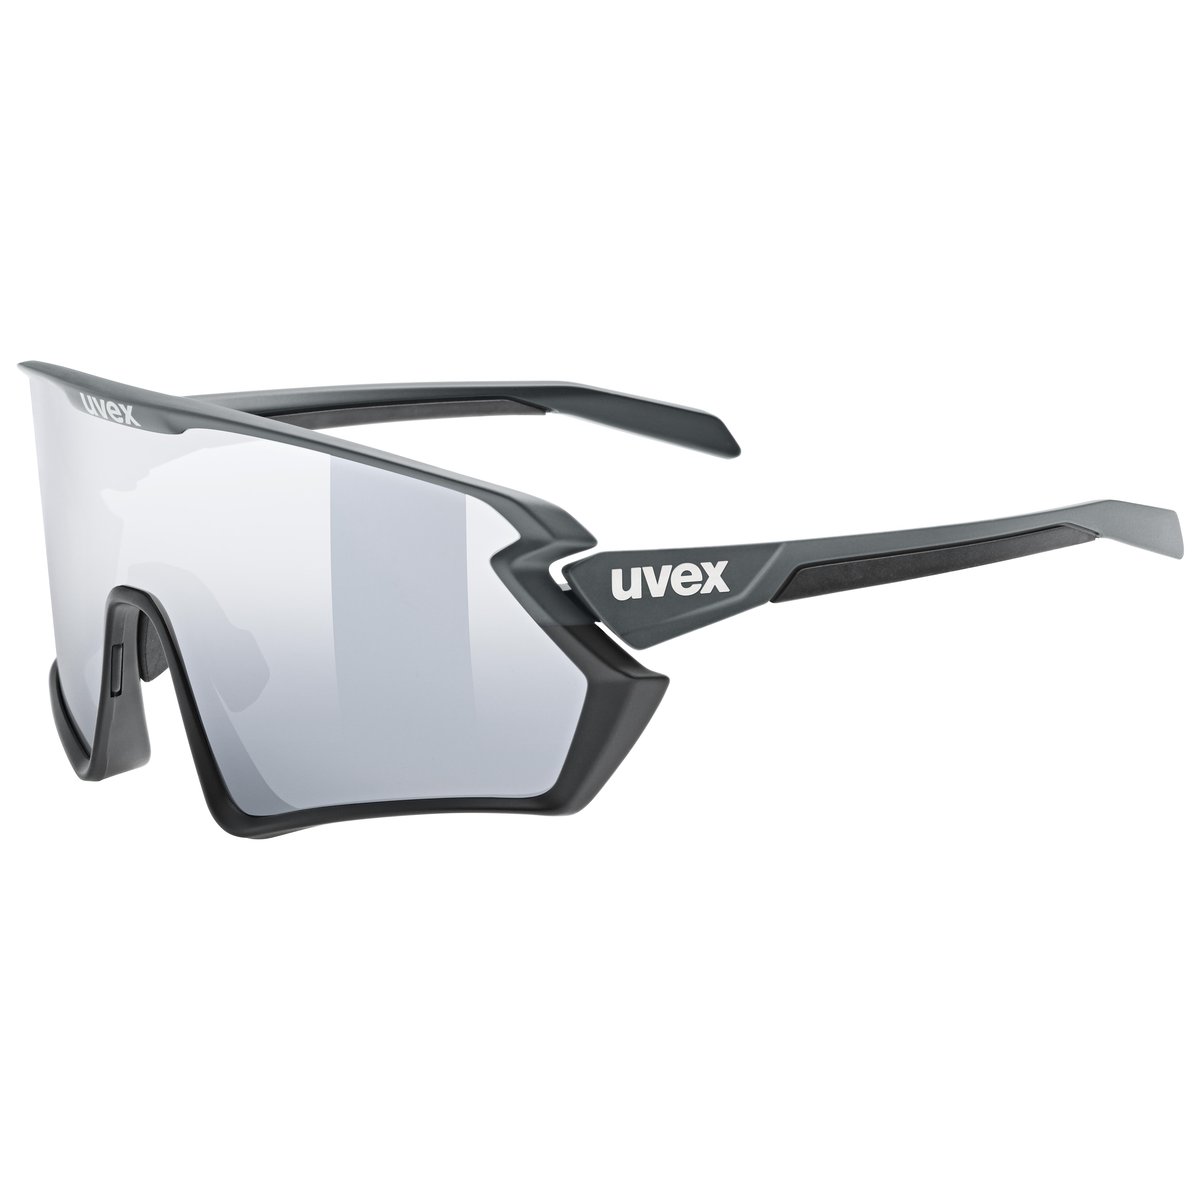 Zdjęcia - Okulary przeciwsłoneczne UVEX , okulary sportowe, sportstyle 231 2.0 grey bl.m/mir.silver 